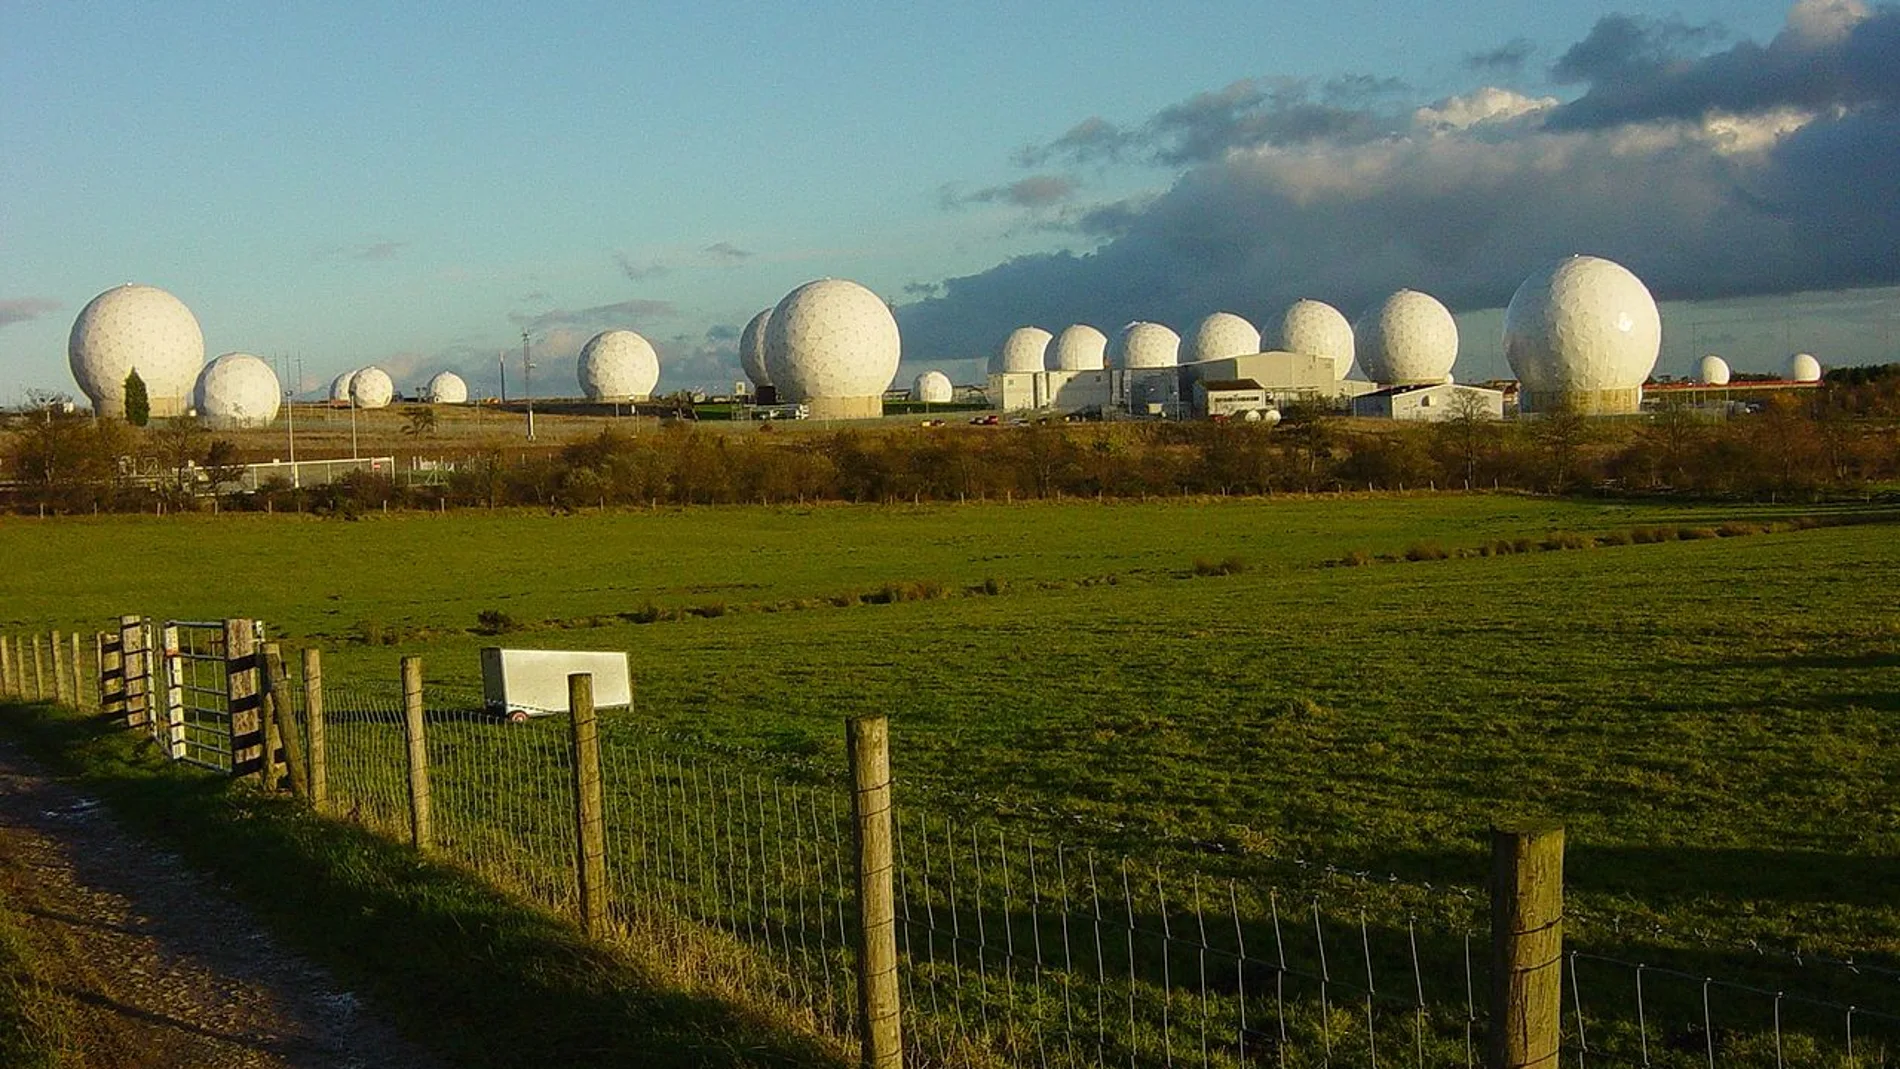 Radomos en Menwith Hill, Yorkshire. Estas estructuras contienen radares militares.